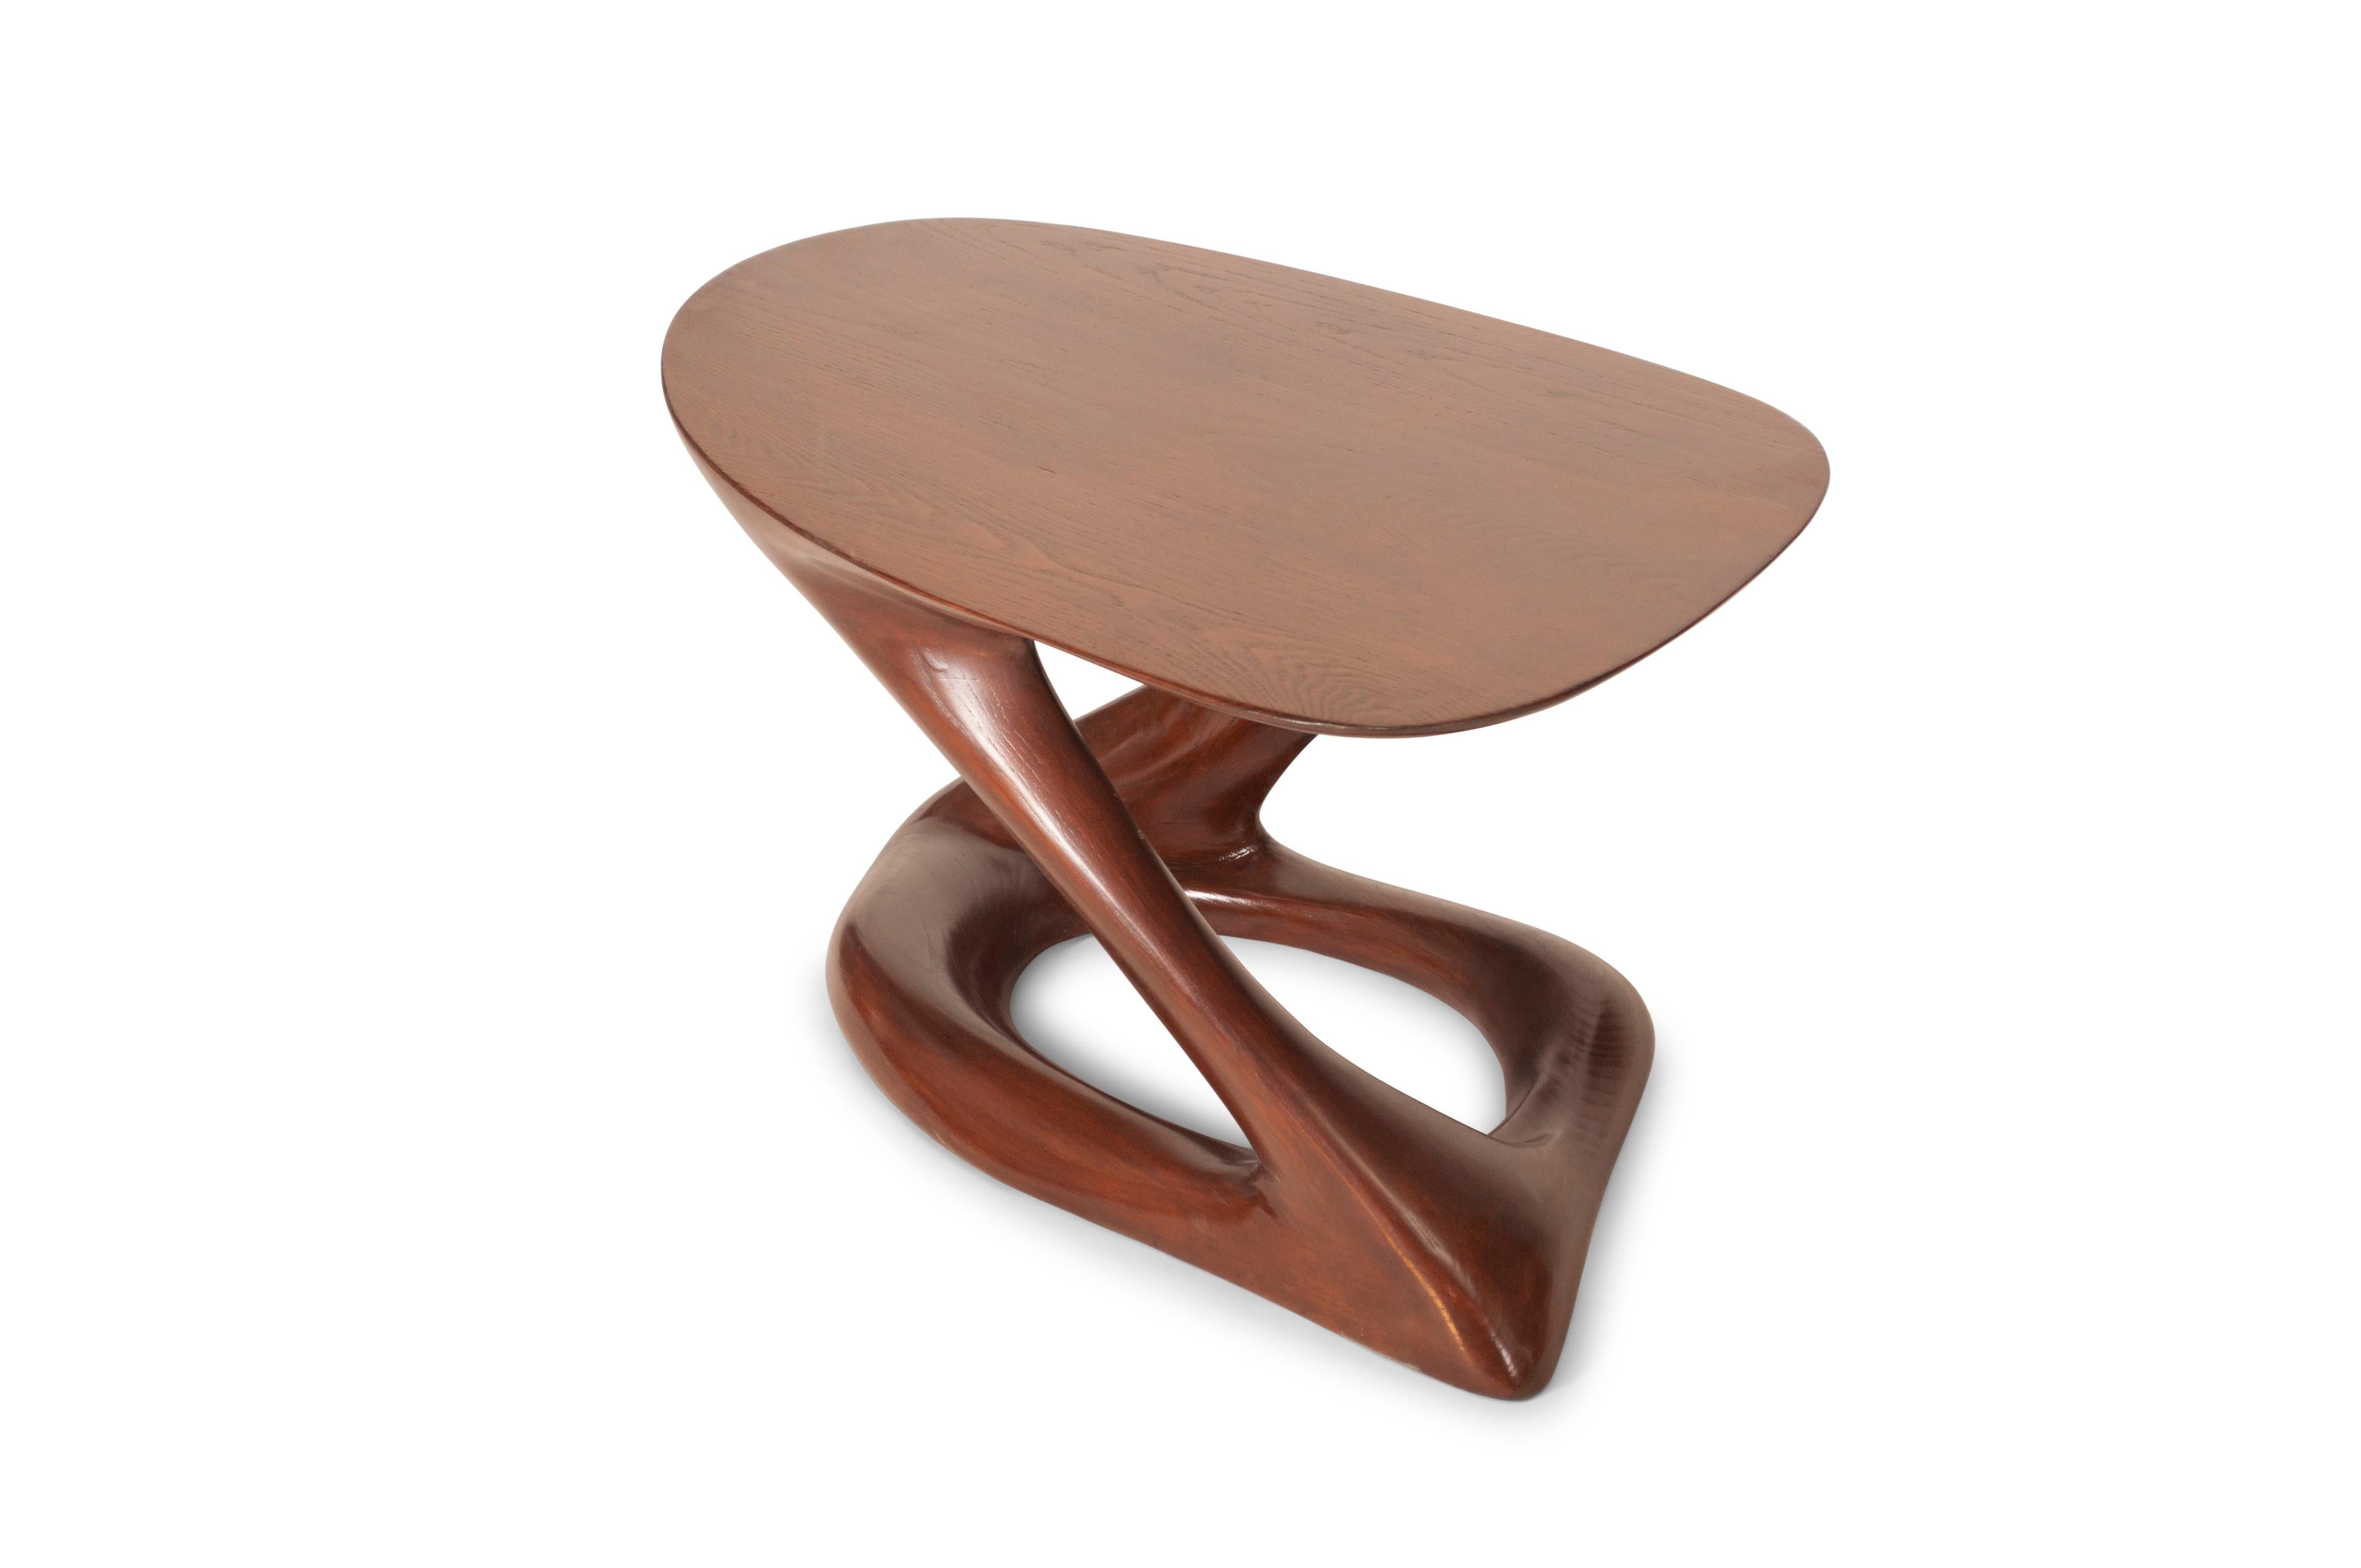 Der Plie Couchtisch ist ein stilvoller, futuristischer, skulpturaler Kunsttisch mit einer dynamischen Form, entworfen und hergestellt von Amorph. Plie ist aus massivem Eschenholz gefertigt und mit dunkler Walnuss gebeizt. Von Natur aus unterscheidet